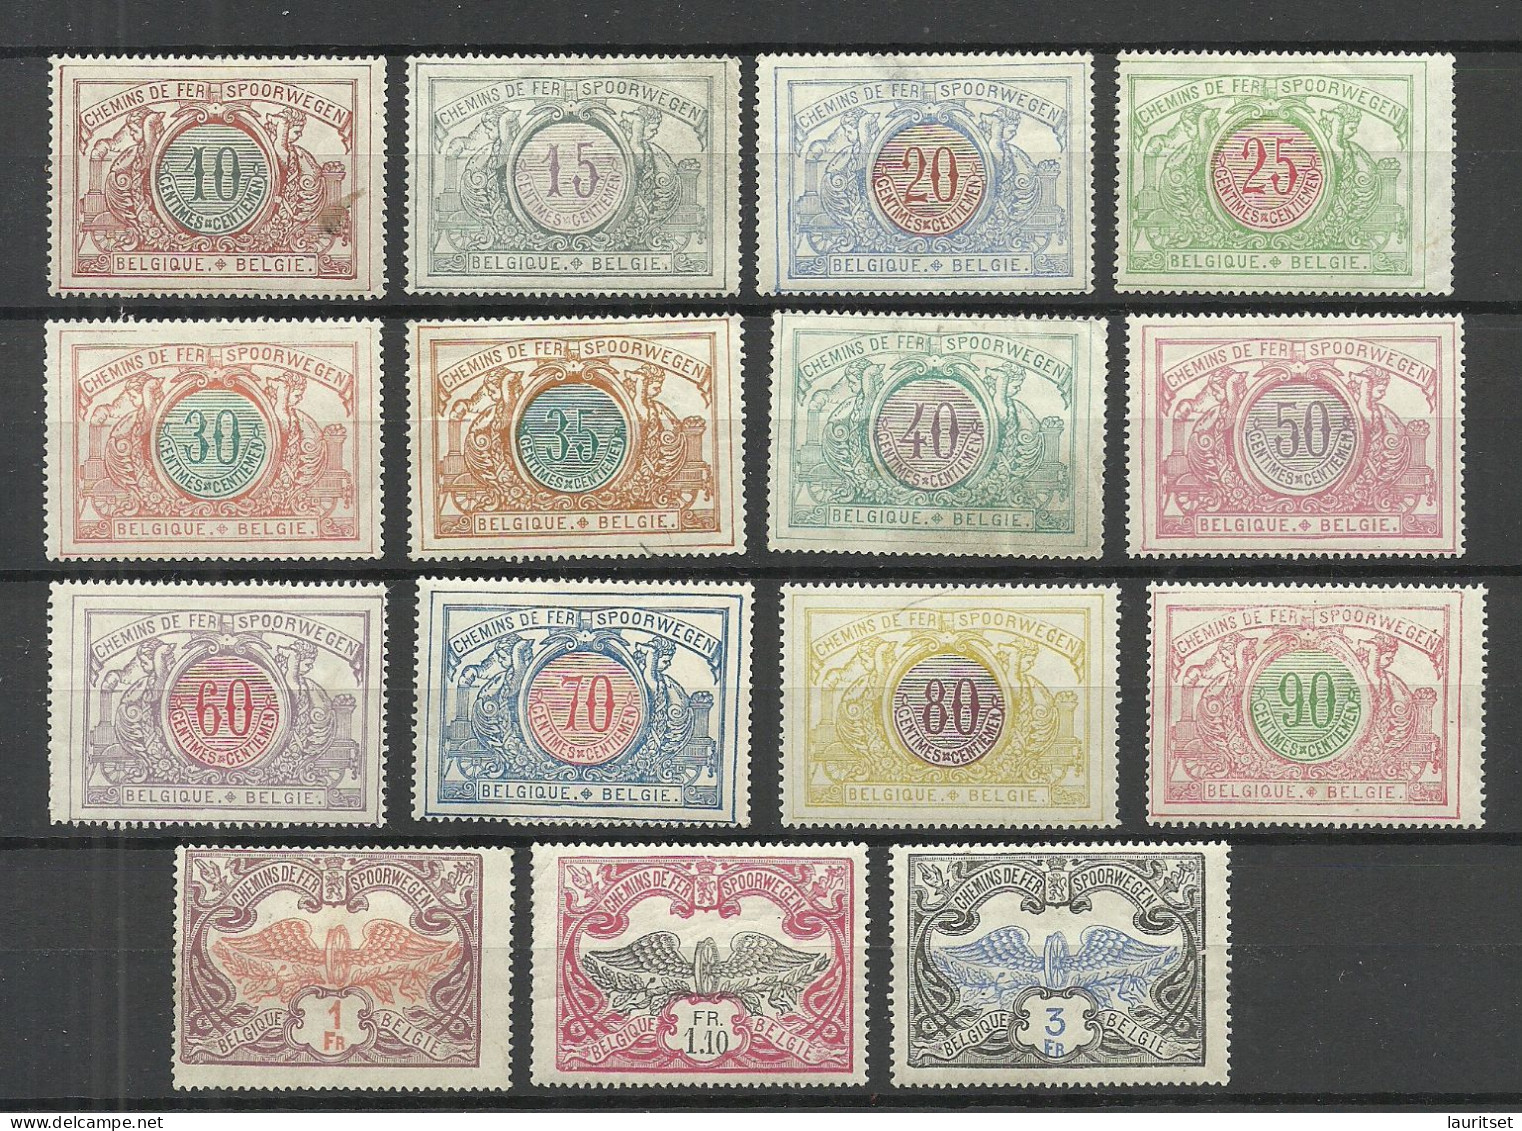 BELGIEN Belgium Belgique 1902-1906 Michel 28 - 42 * Railway Packet Stamps Eisenbahnpaketmarken NB! READ! - Mint